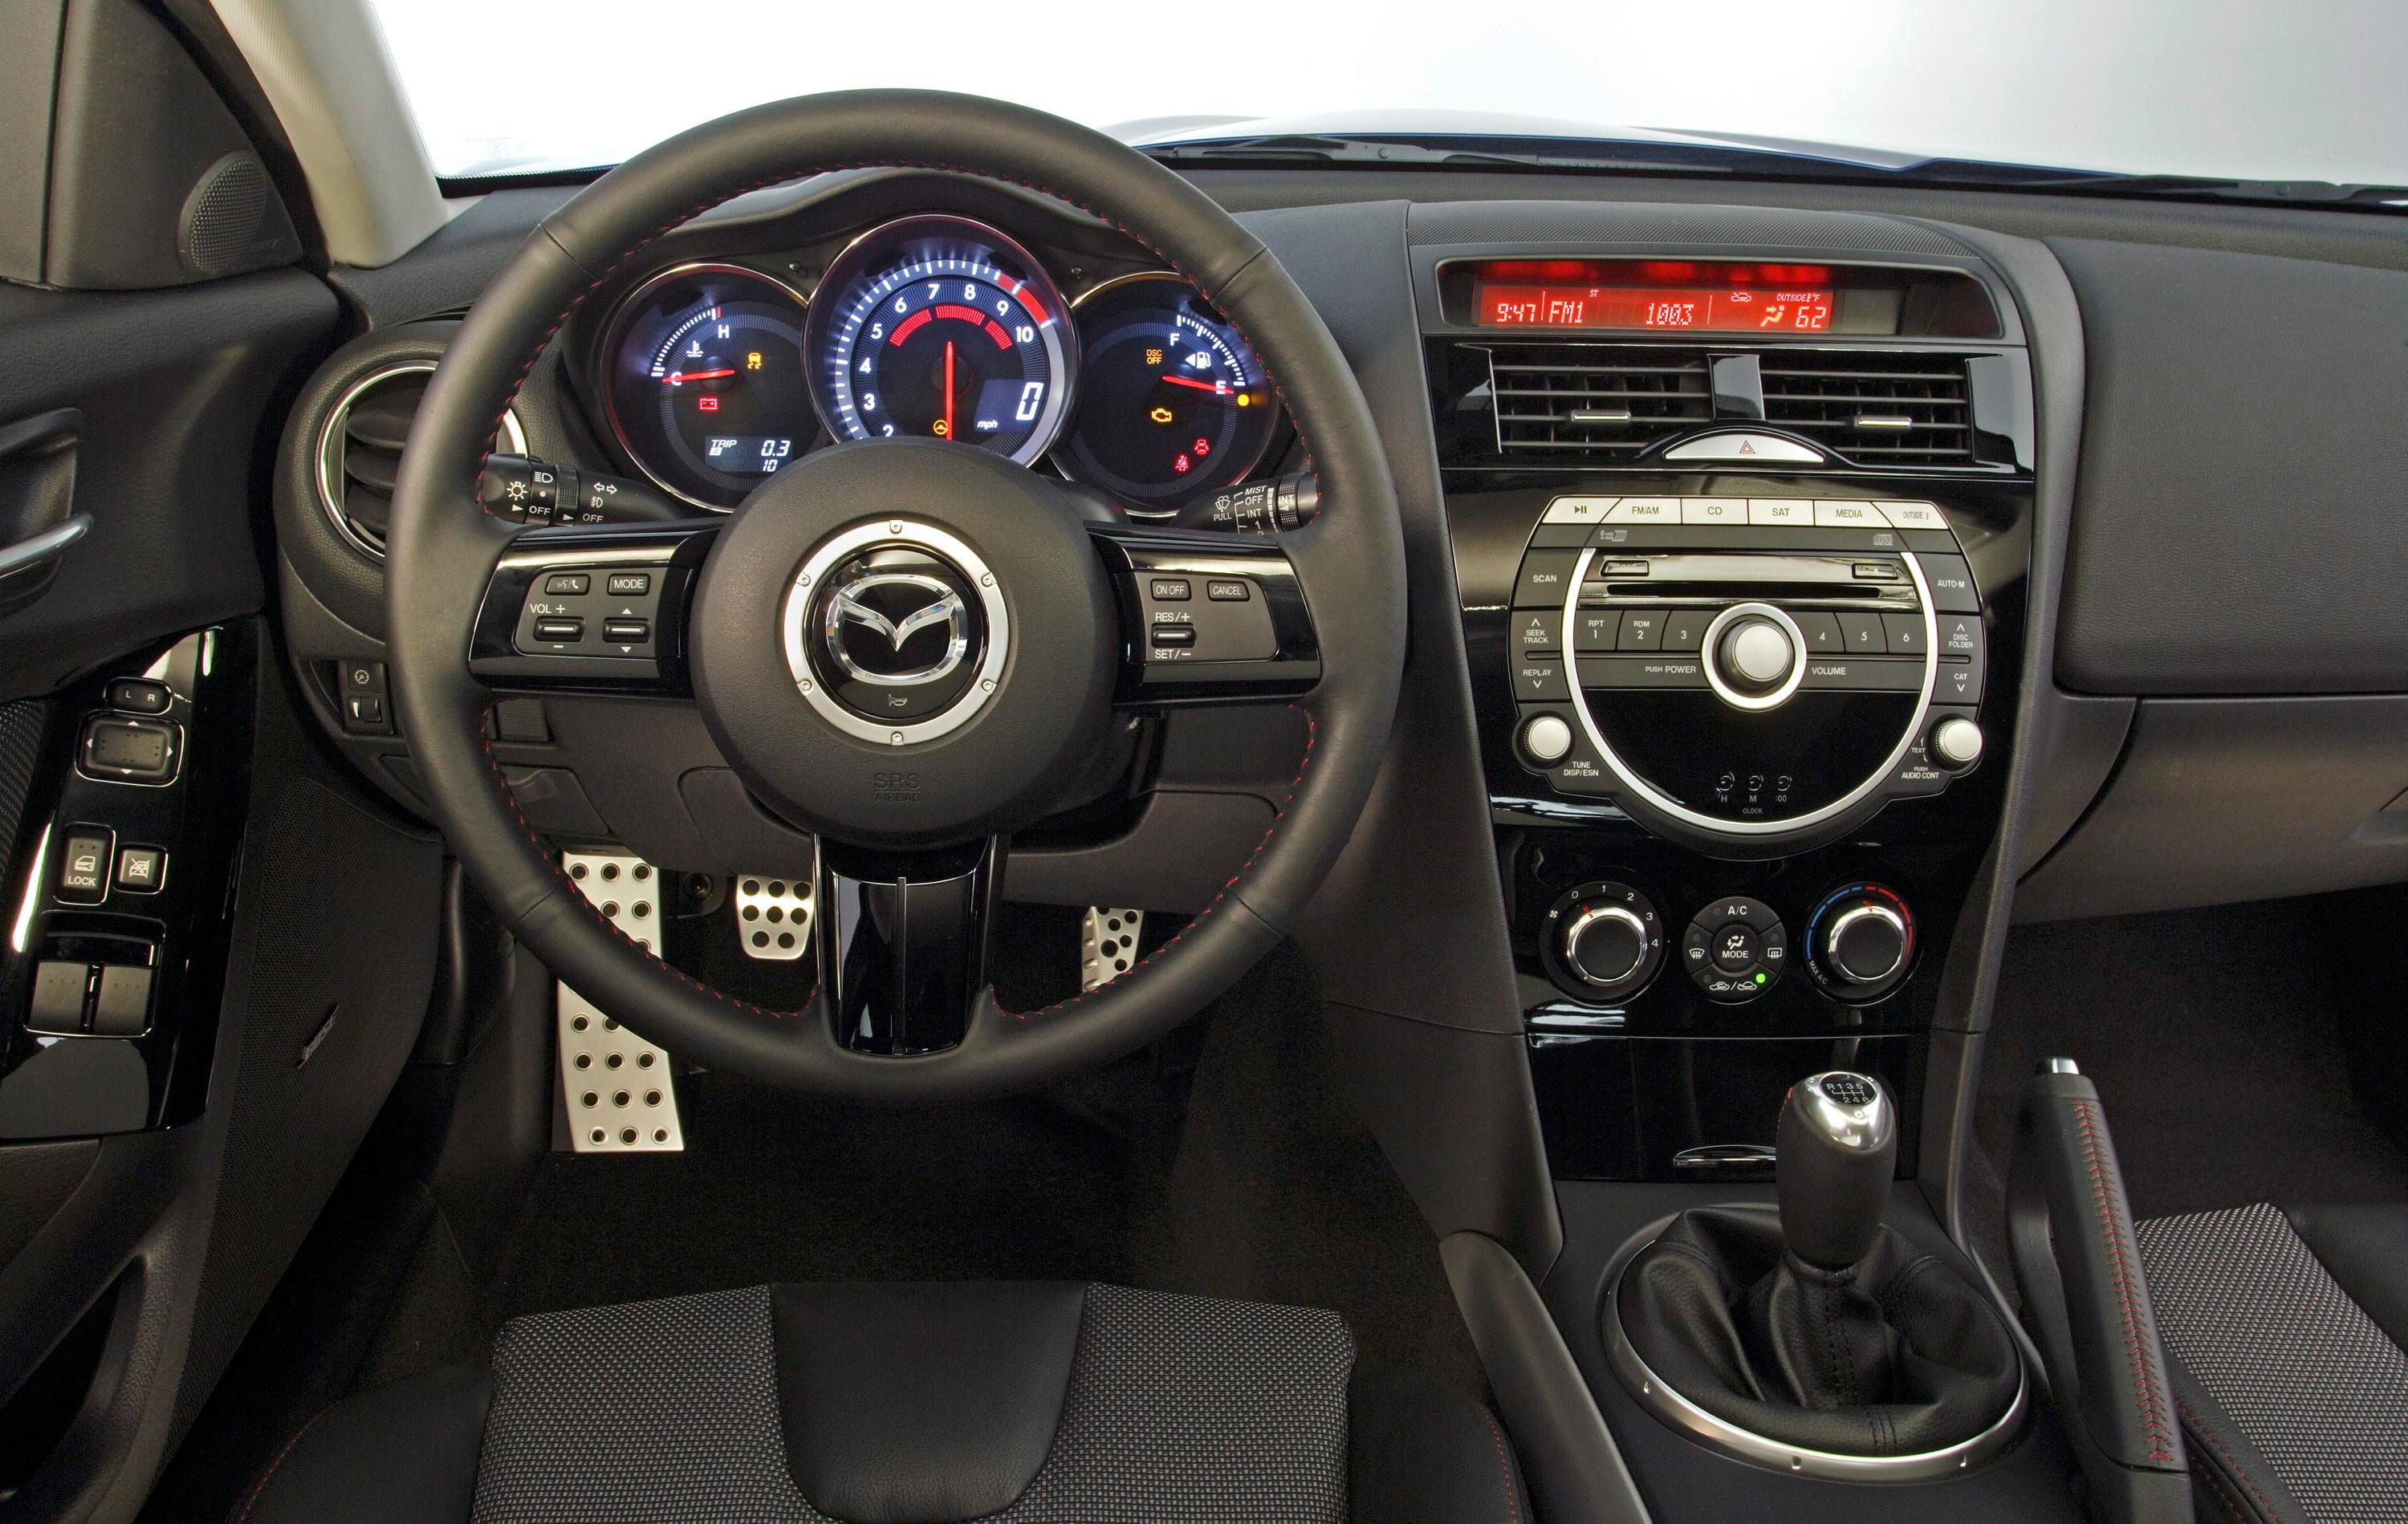 2009 Mazda RX-8